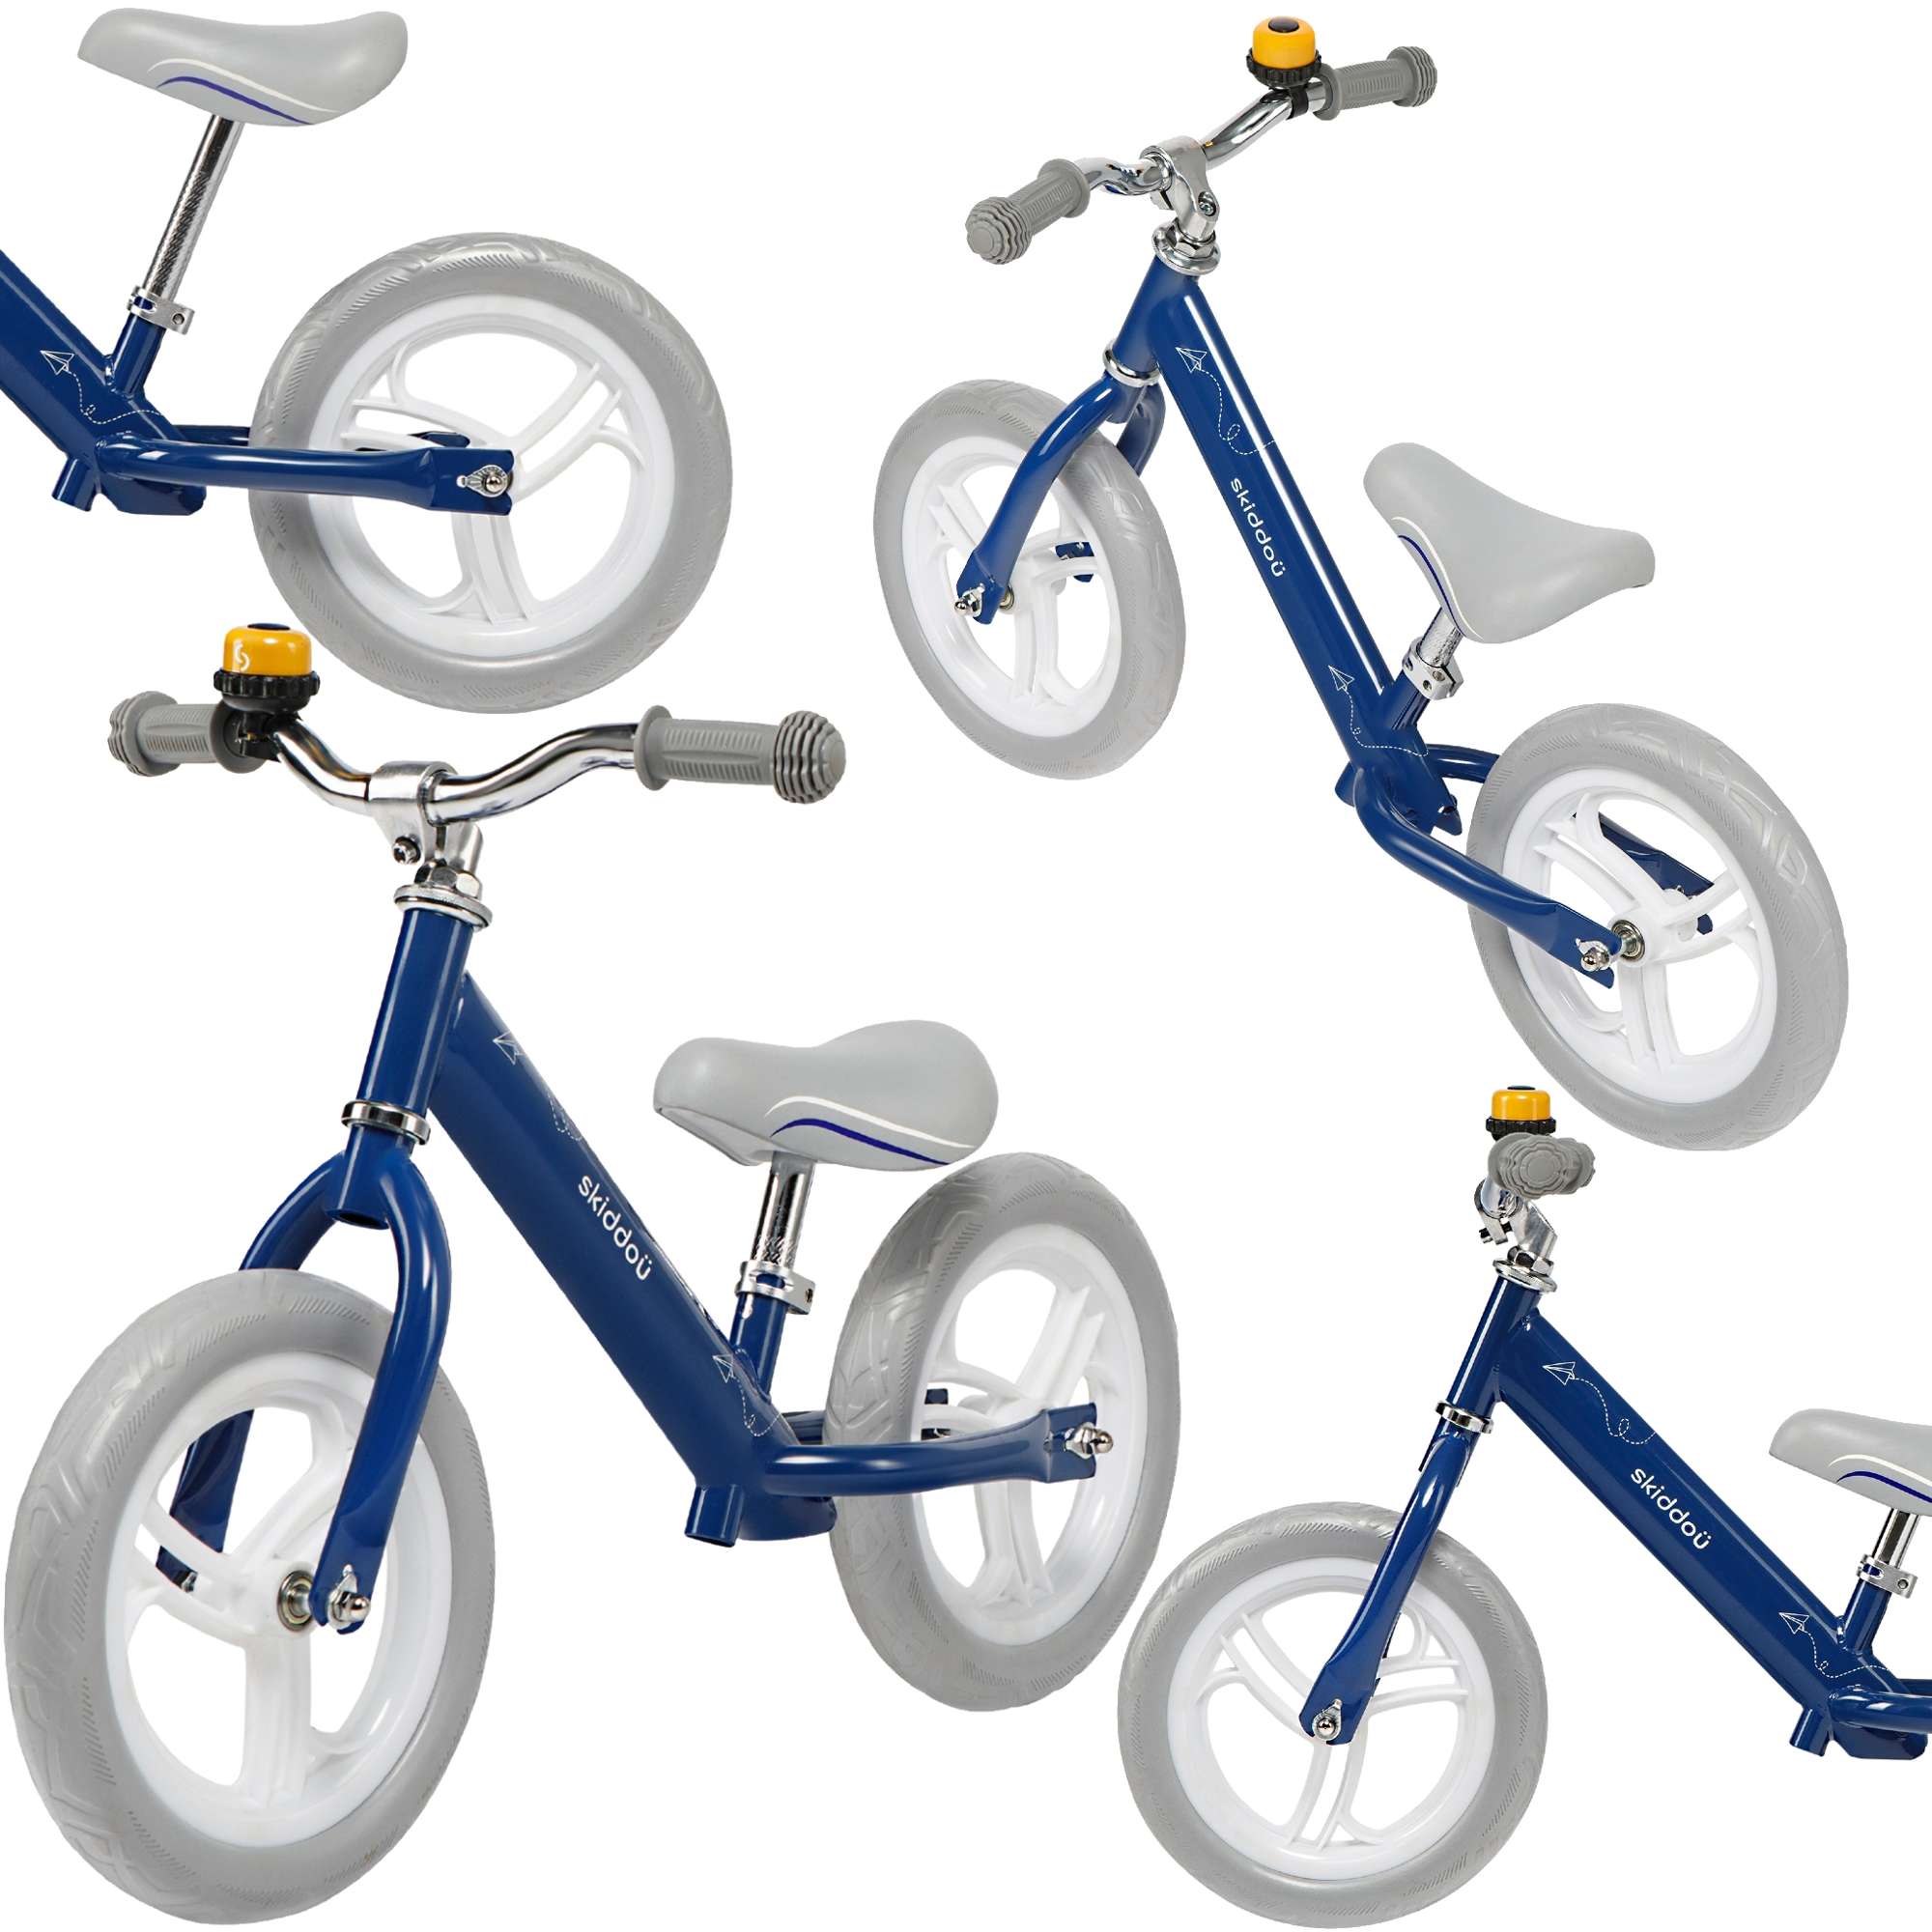 Lekki rowerek biegowy balansowy dwukoowy z dzwonkiem Nils dla dzieci